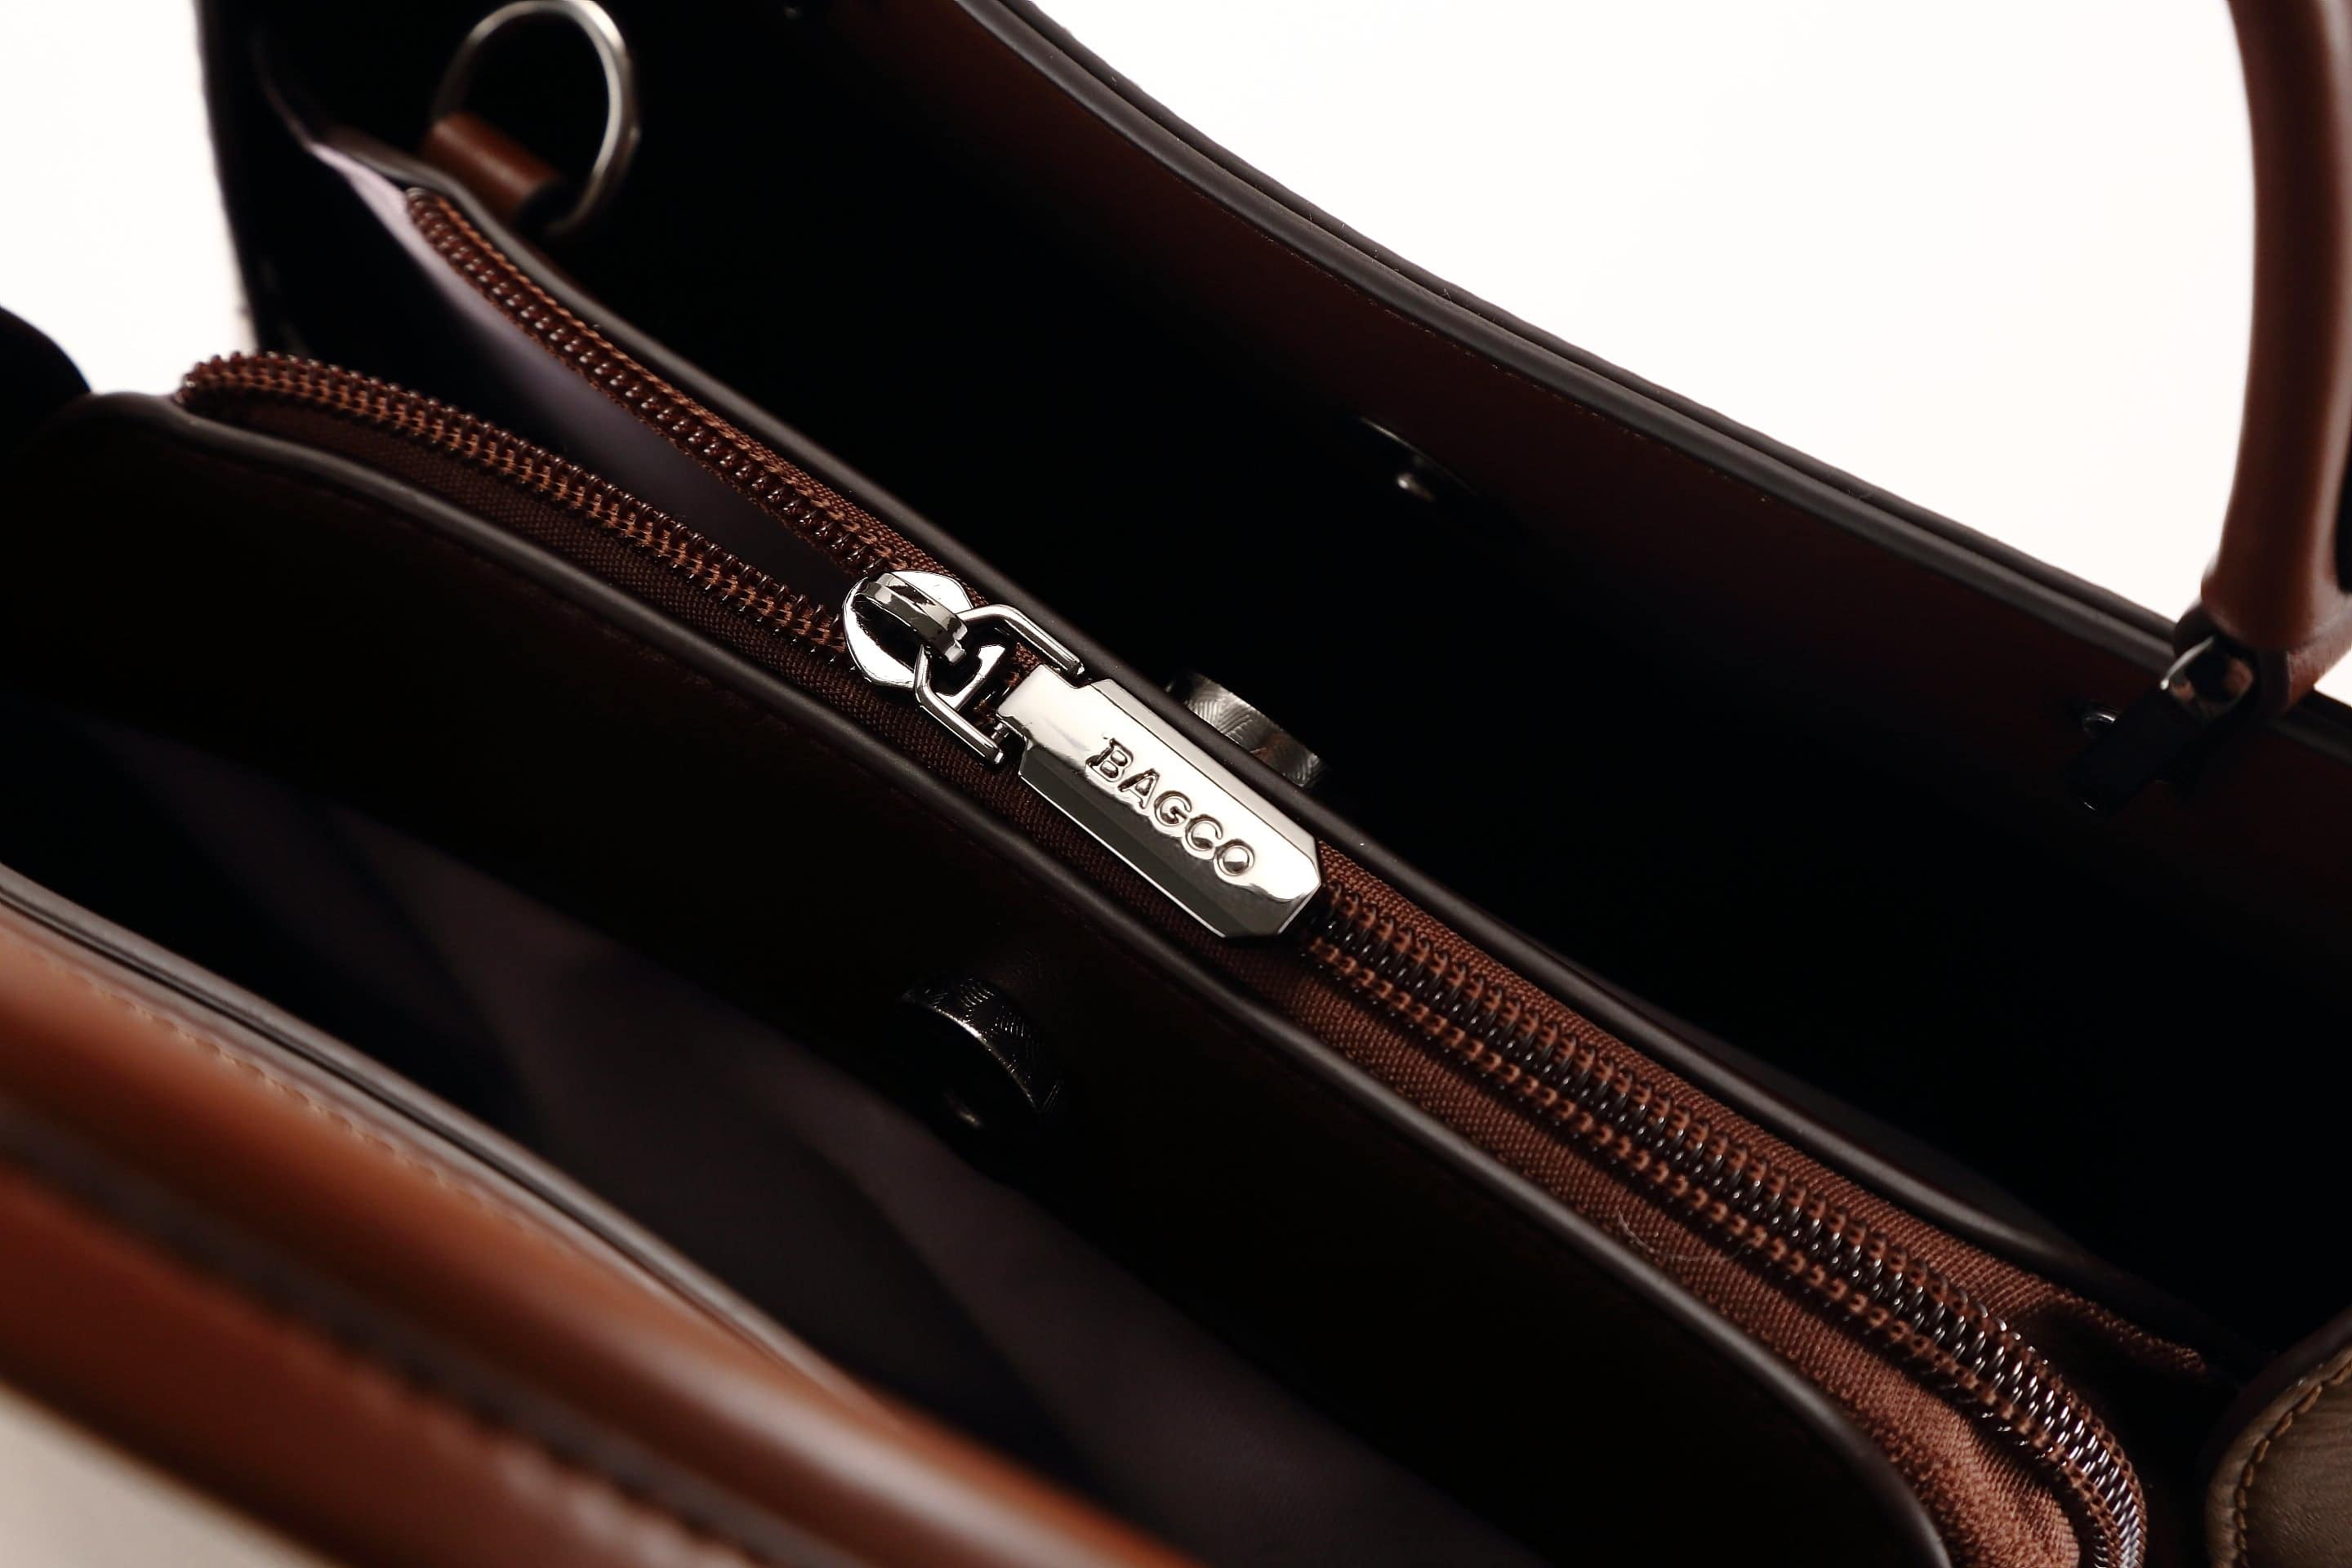 حقيبة يد نسائية باللون البنى الغامق مربعة الشكل كبيرة الحجم بيد وحزام طويل لحملها على الكتف - KSA